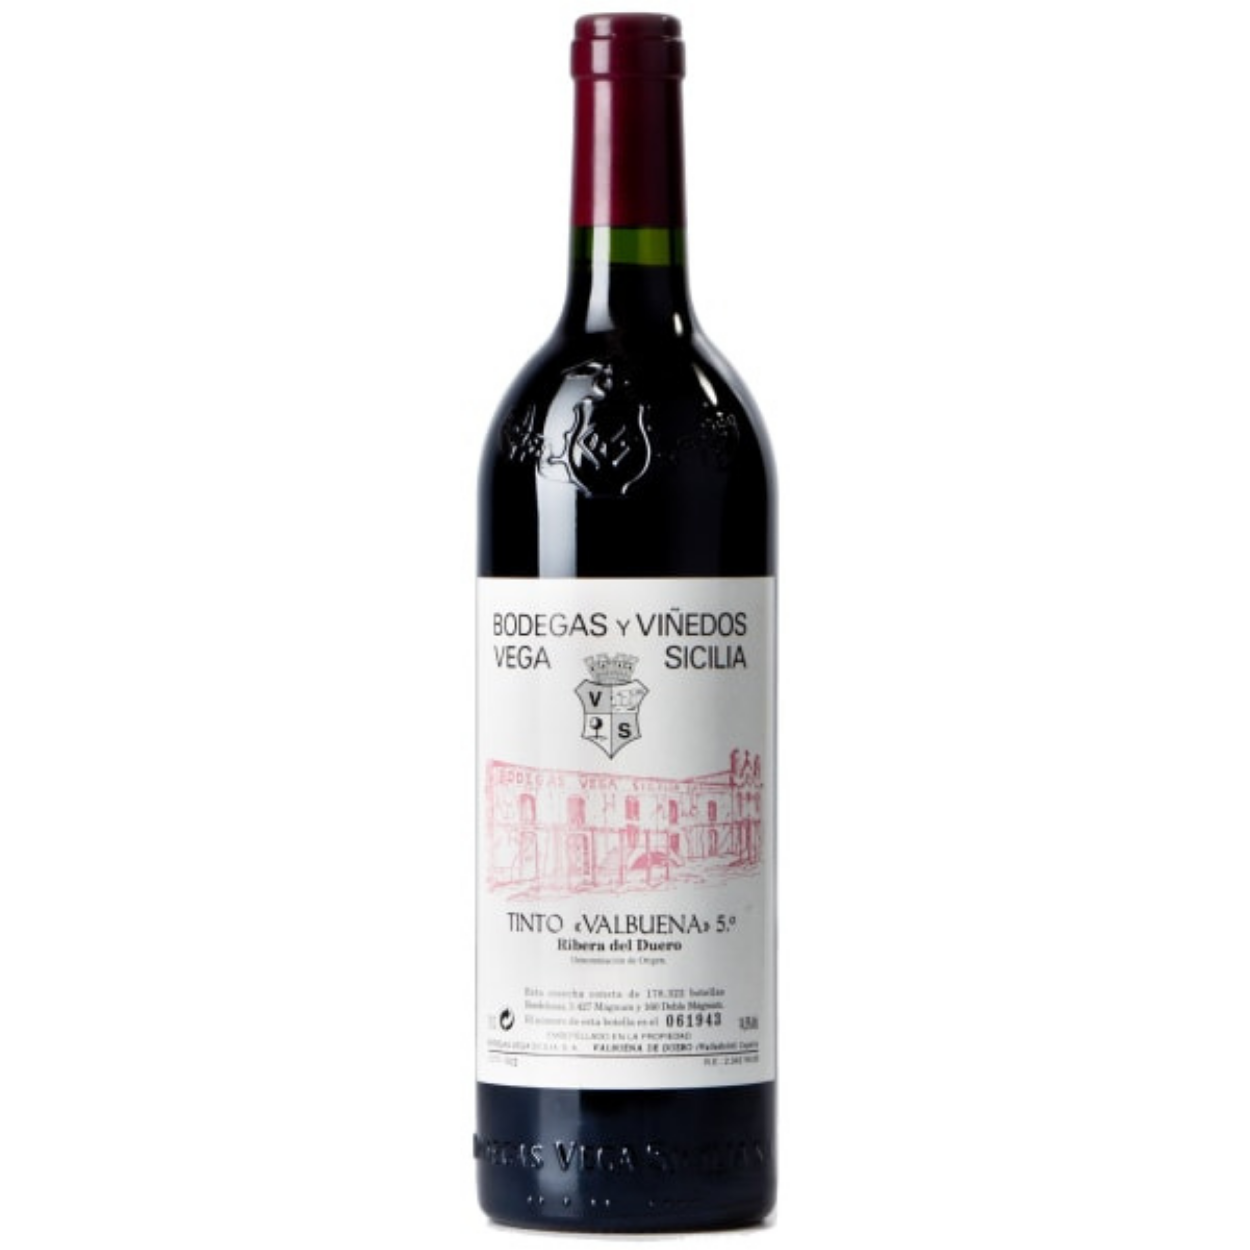 2015 Vega Sicilia Tinto Valbuena 5 Ribera del Duero Spain - The Wine Connection